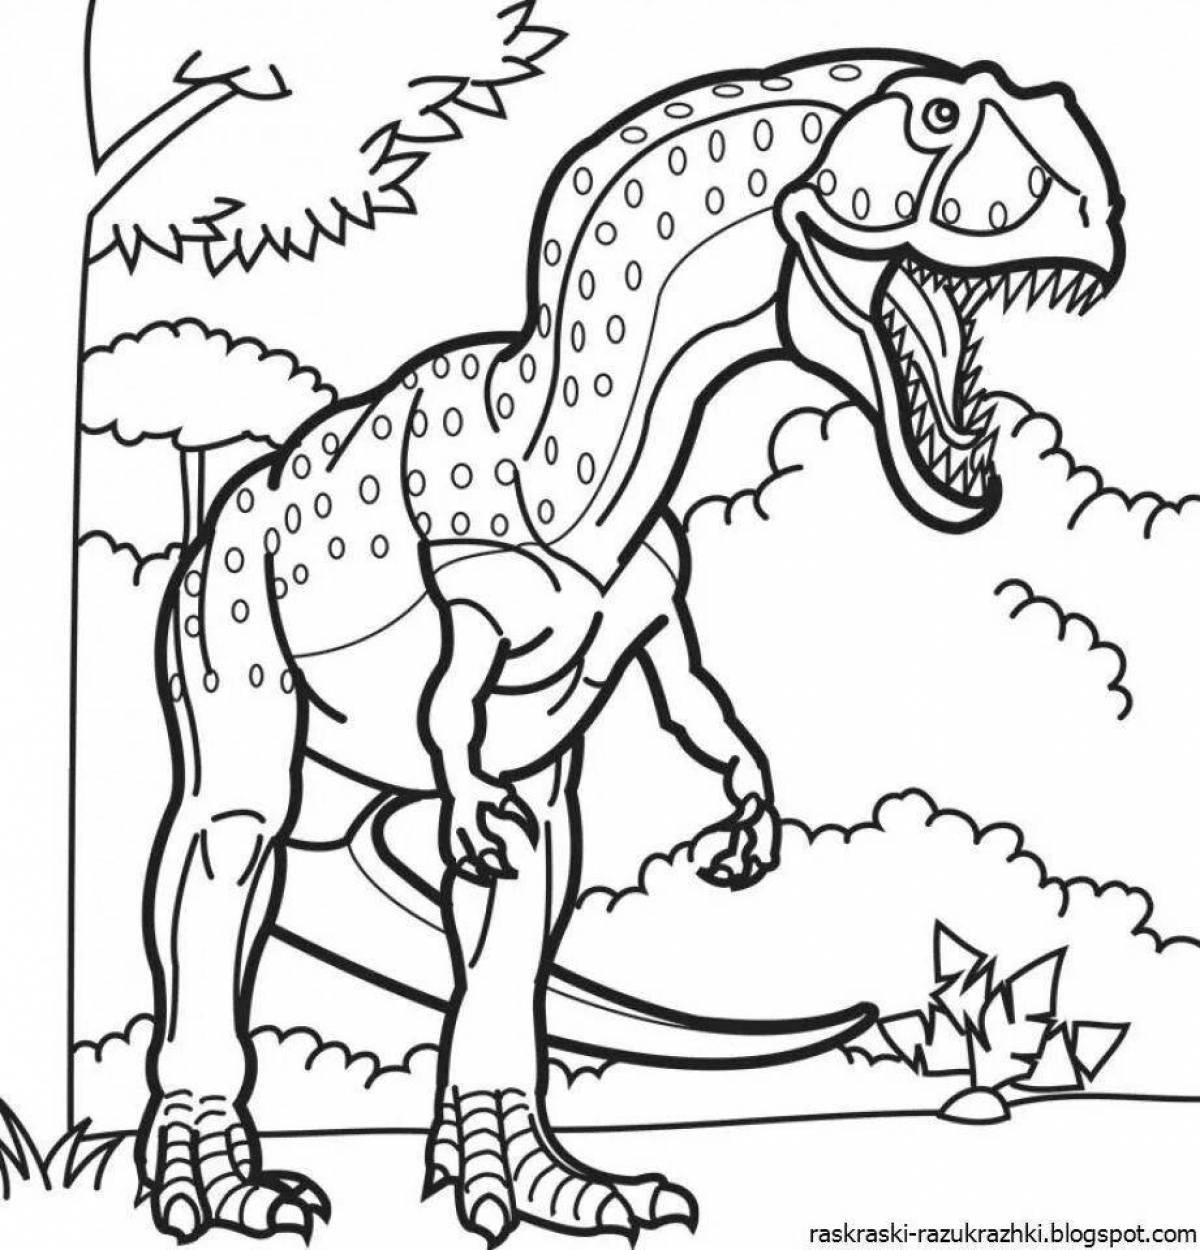 Увлекательная раскраска динозавров для мальчиков 5-7 лет